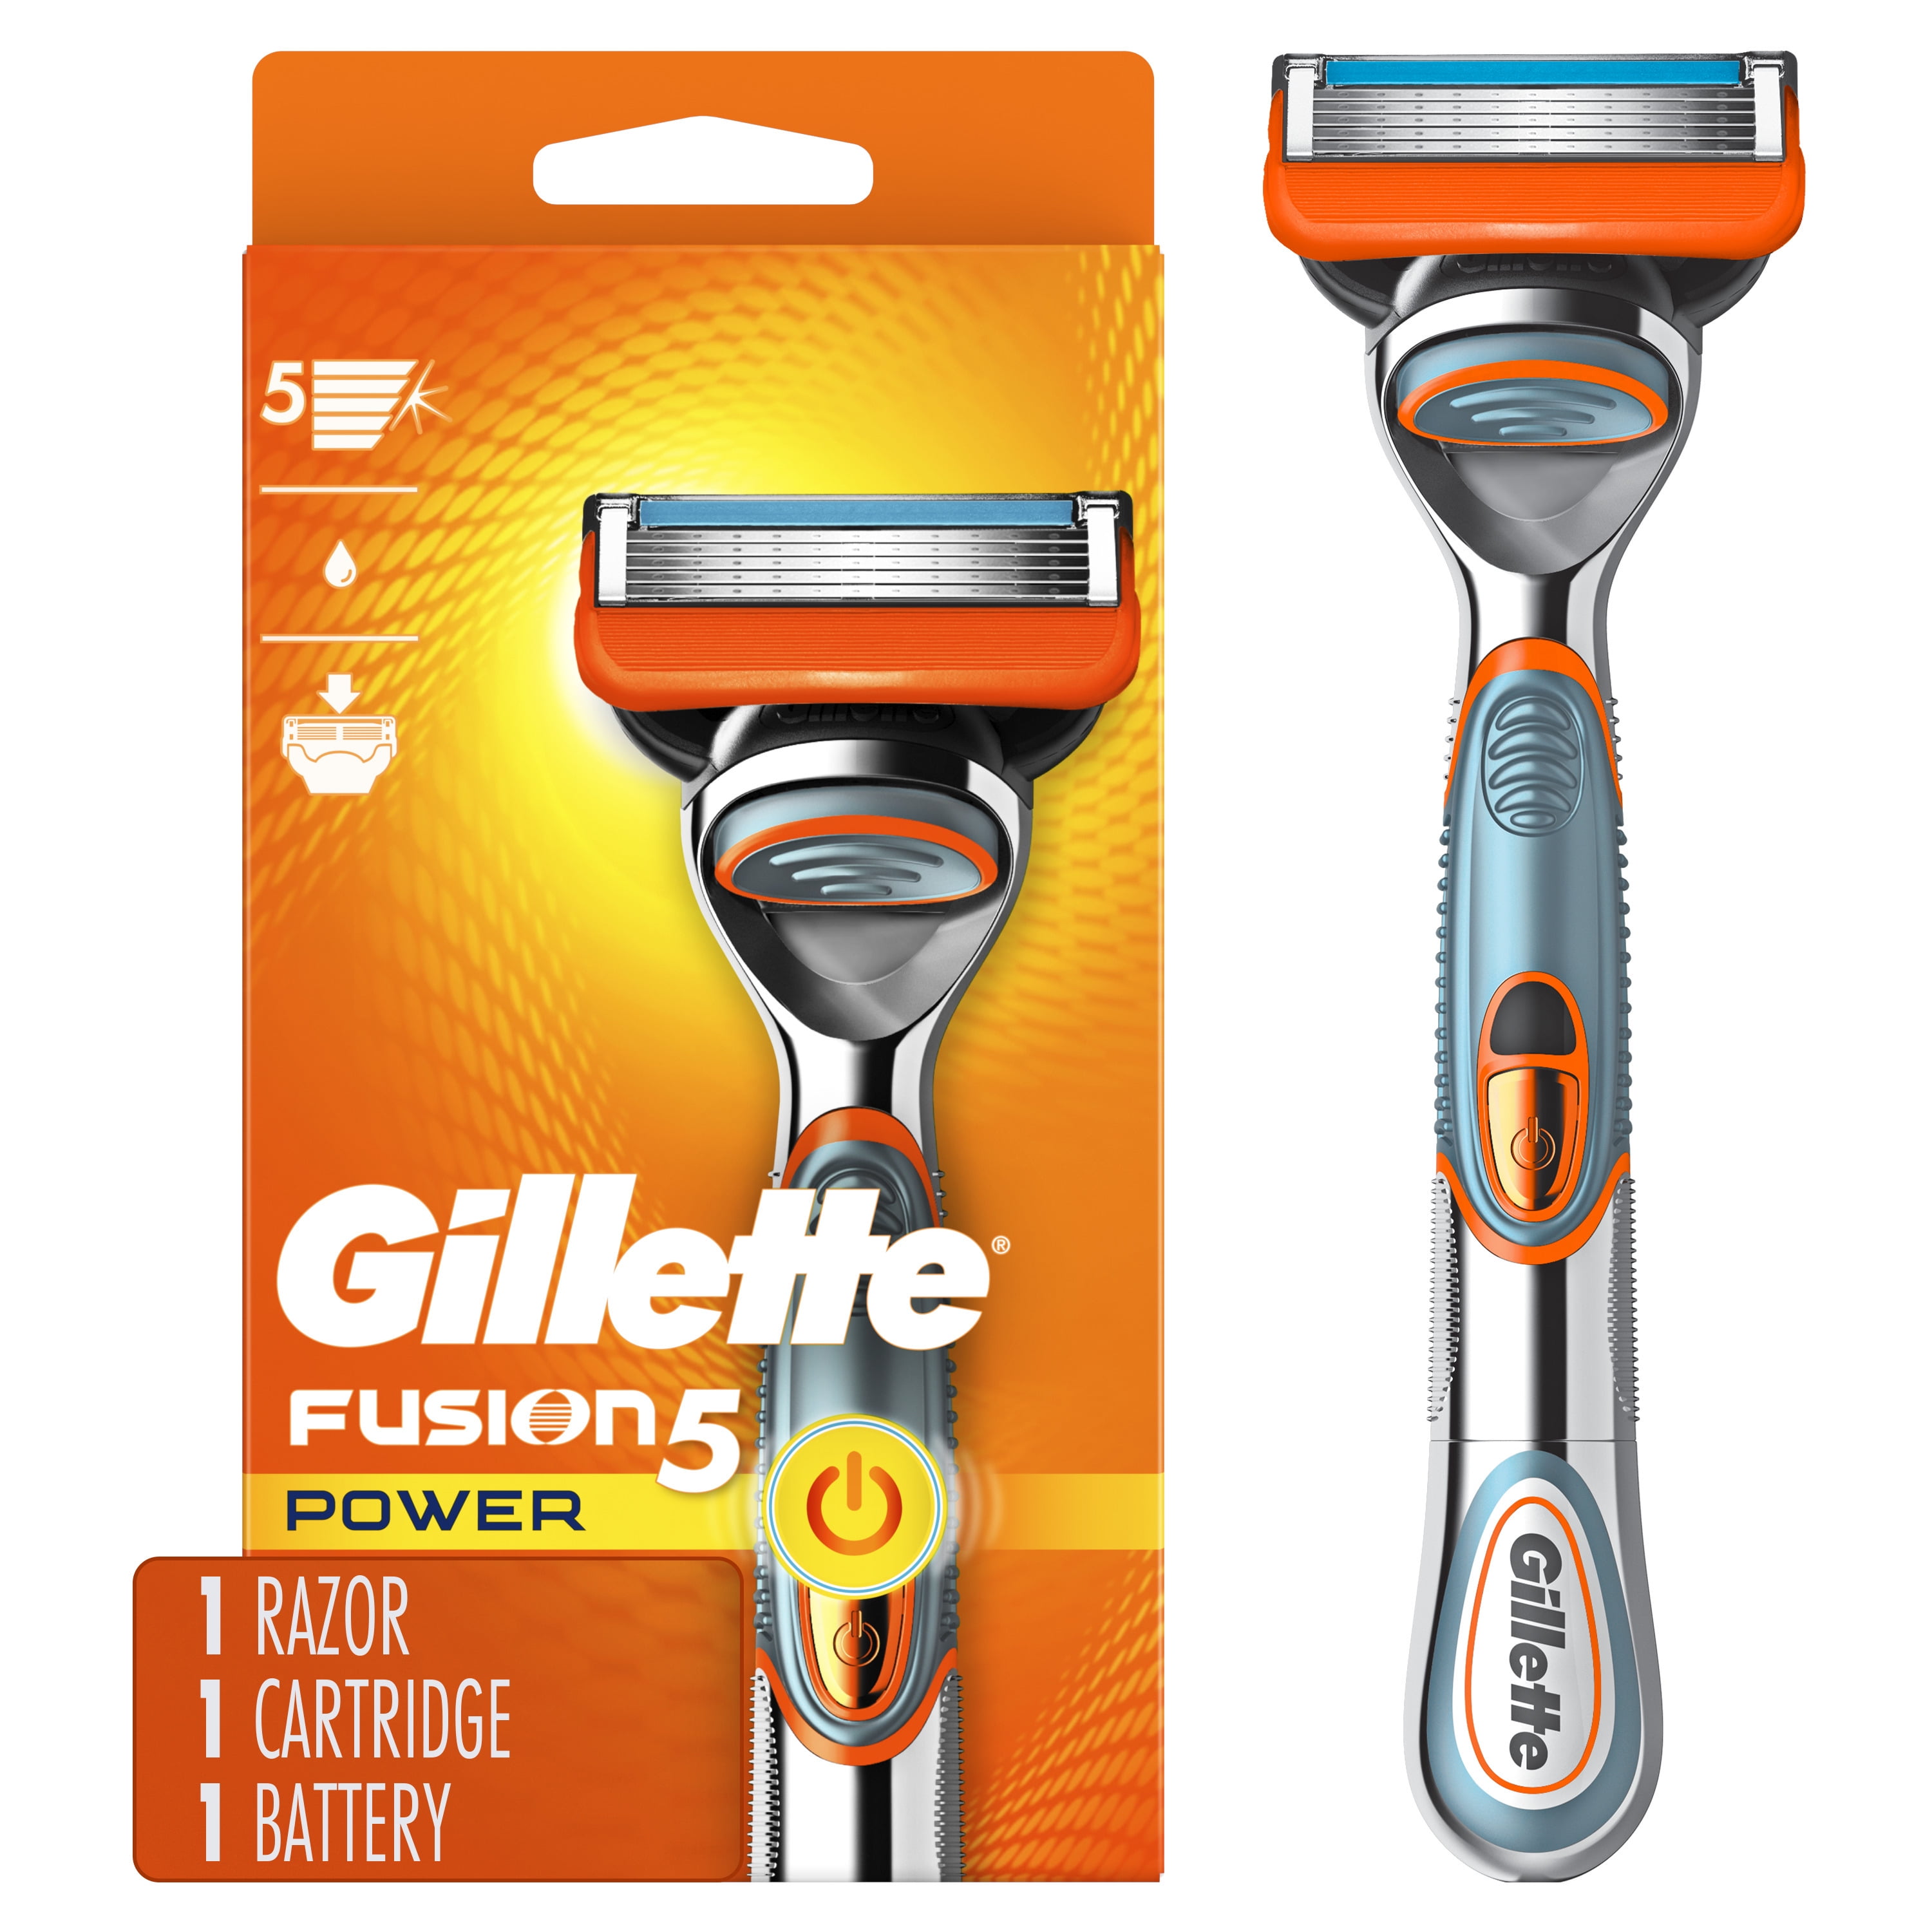 Gillette Fusion5 Power Men's Razor Refill - Walmart.com